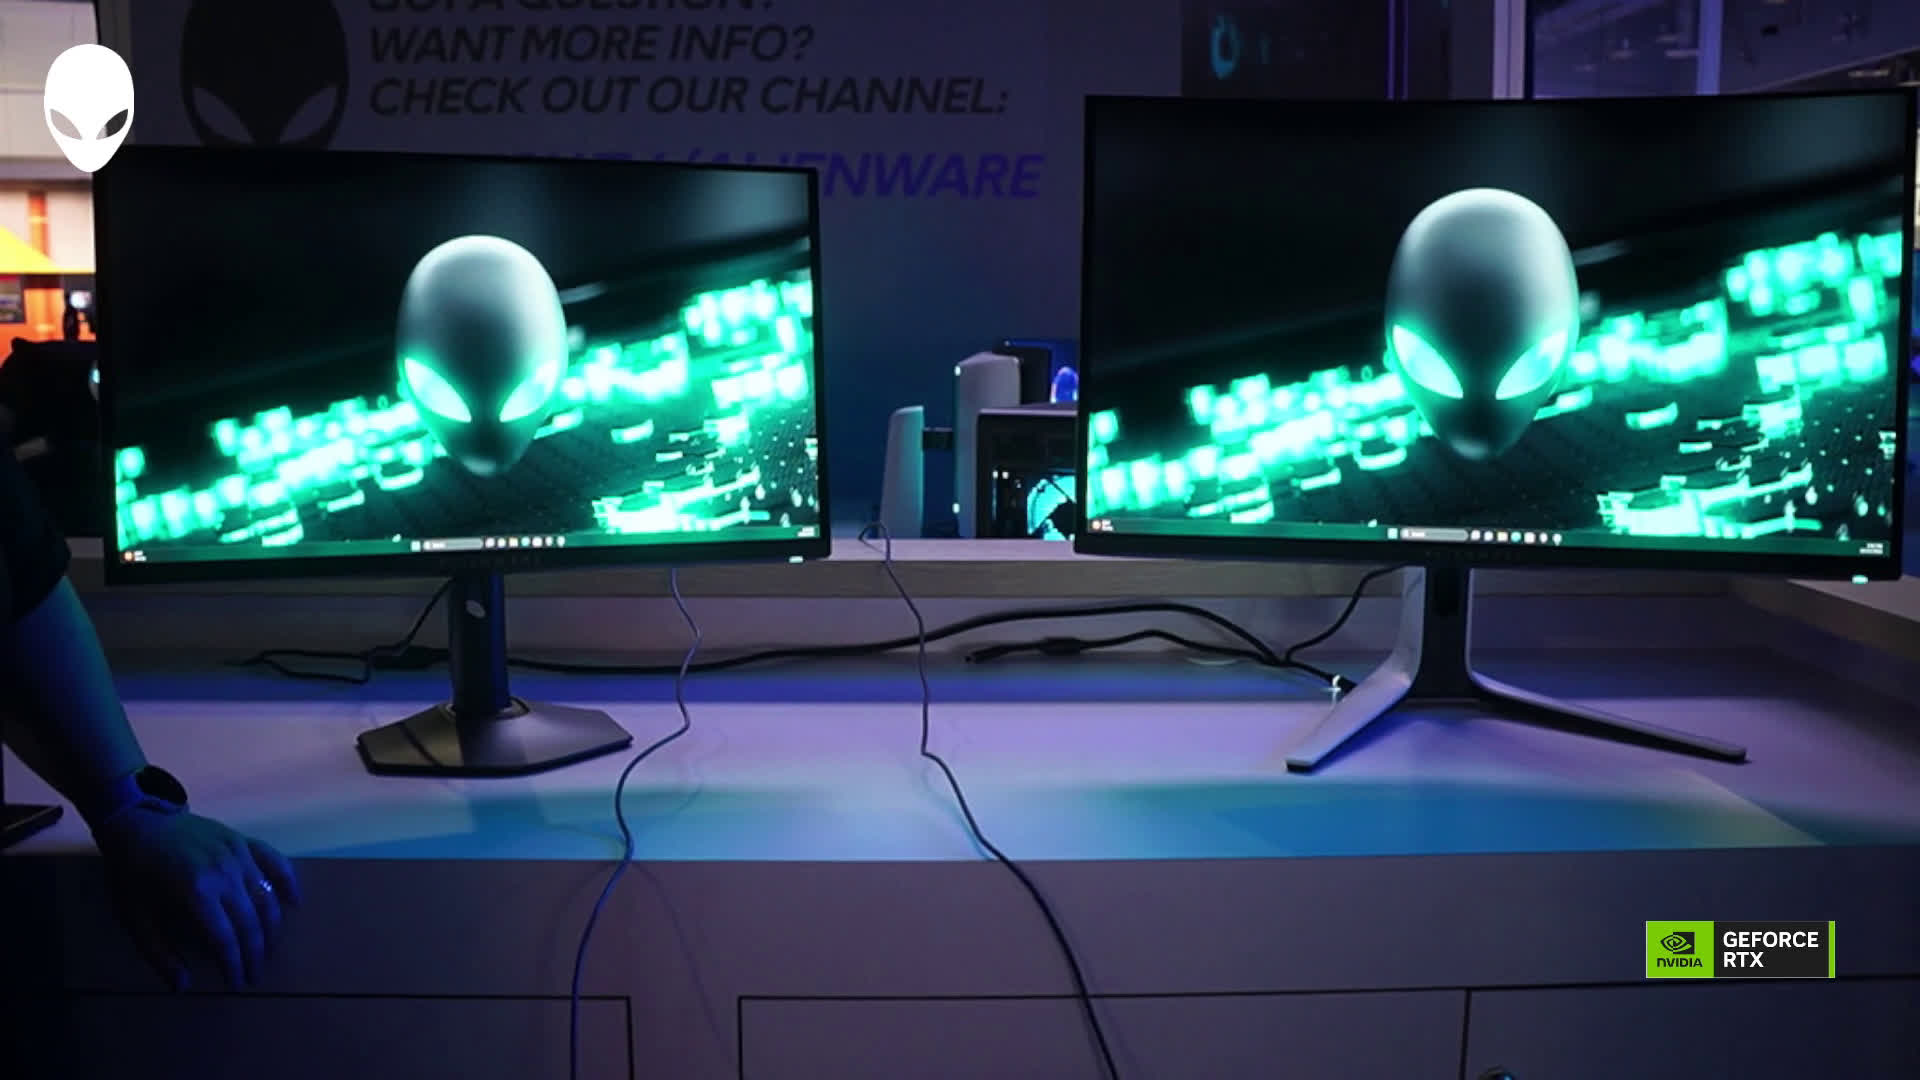 Écran gaming Alienware 500 Hz (AW2524H) - Écrans d'ordinateur